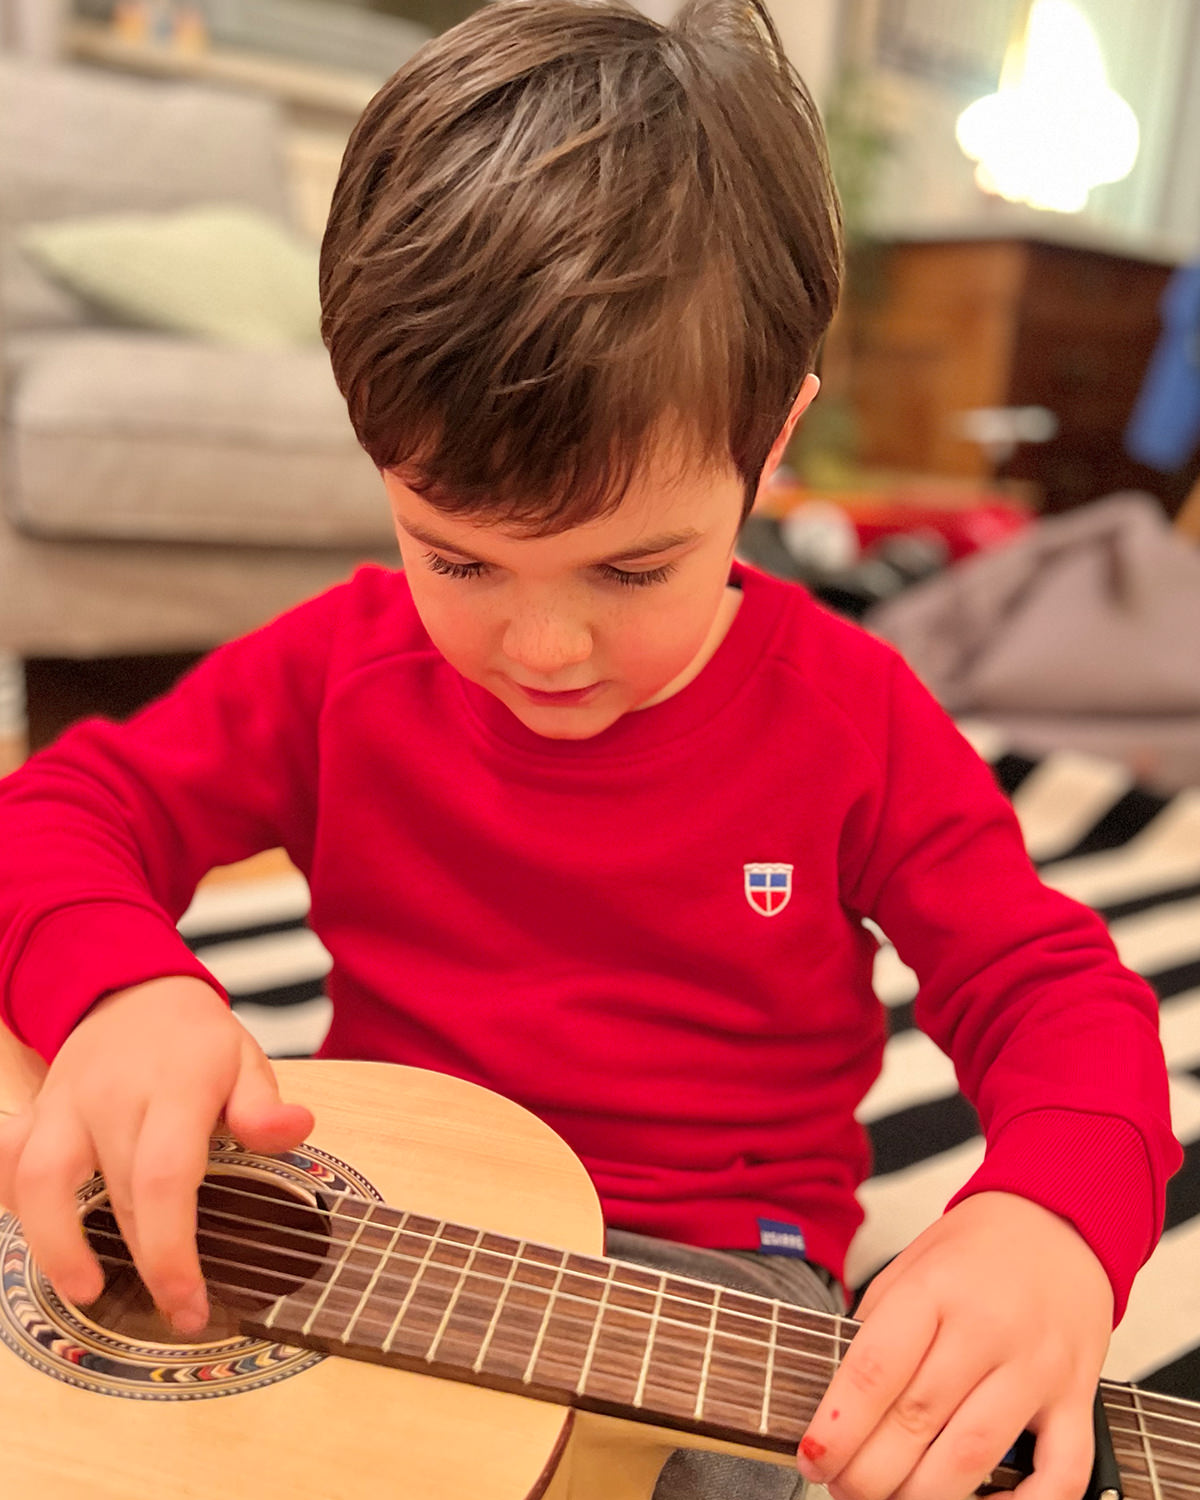 Wir sehen Anton, 5 Jahre alt in unserem Kinder Pullover Tom mit Saarland Wappen auf der linken Brust. Anton stimmt gerade eine Gitarre.